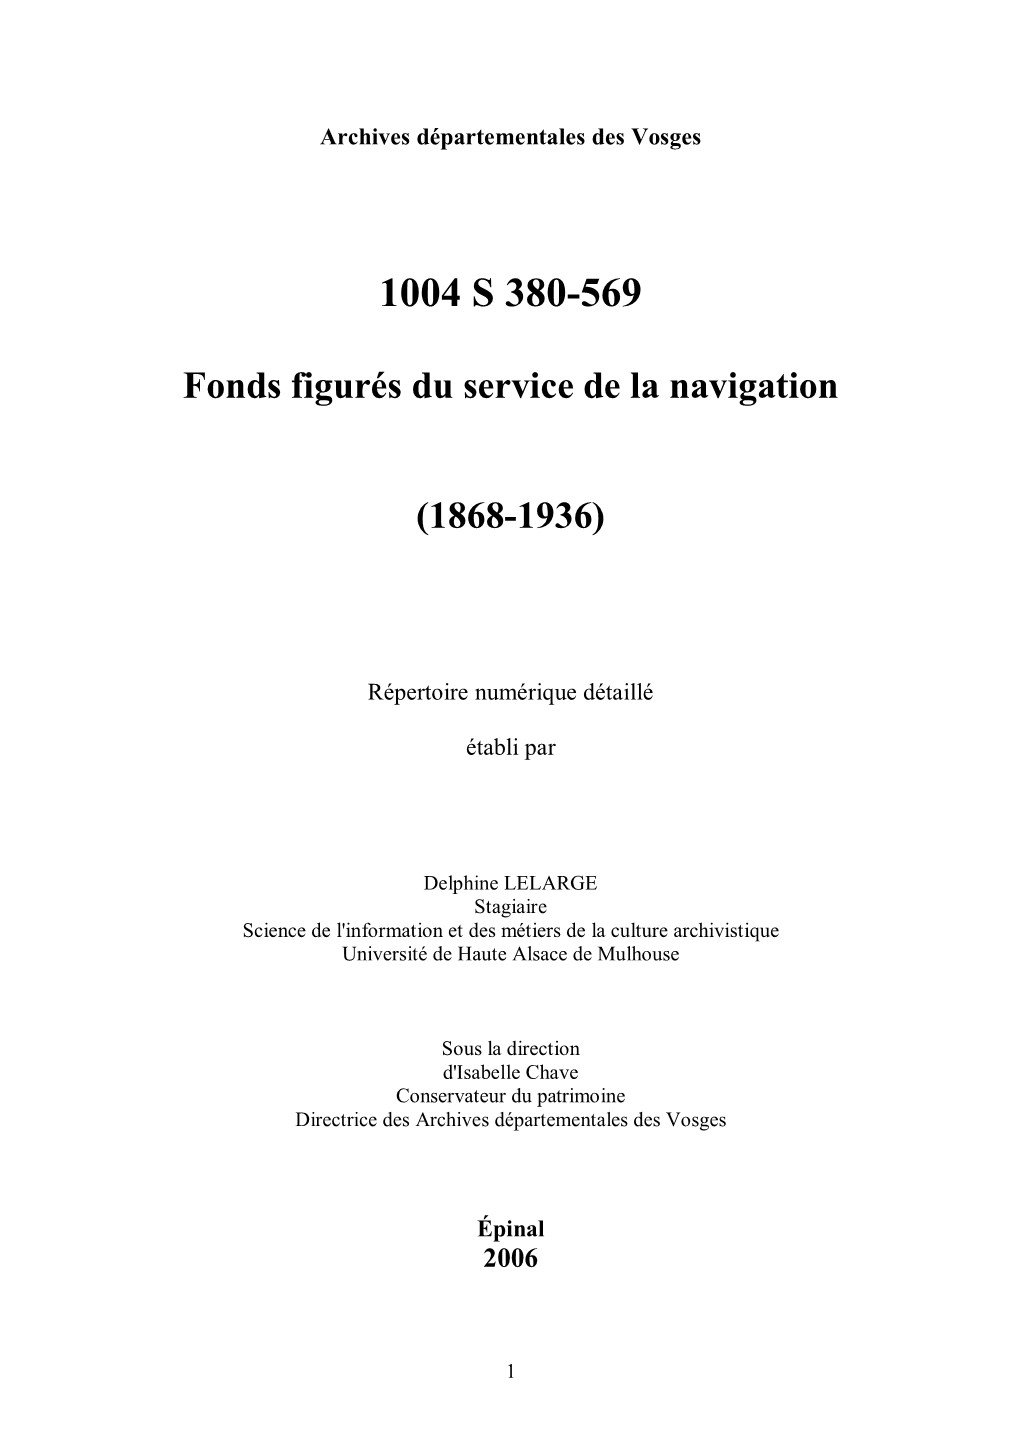 1004 S 380-569 Fonds Figurés Du Service De La Navigation (1868-1936)